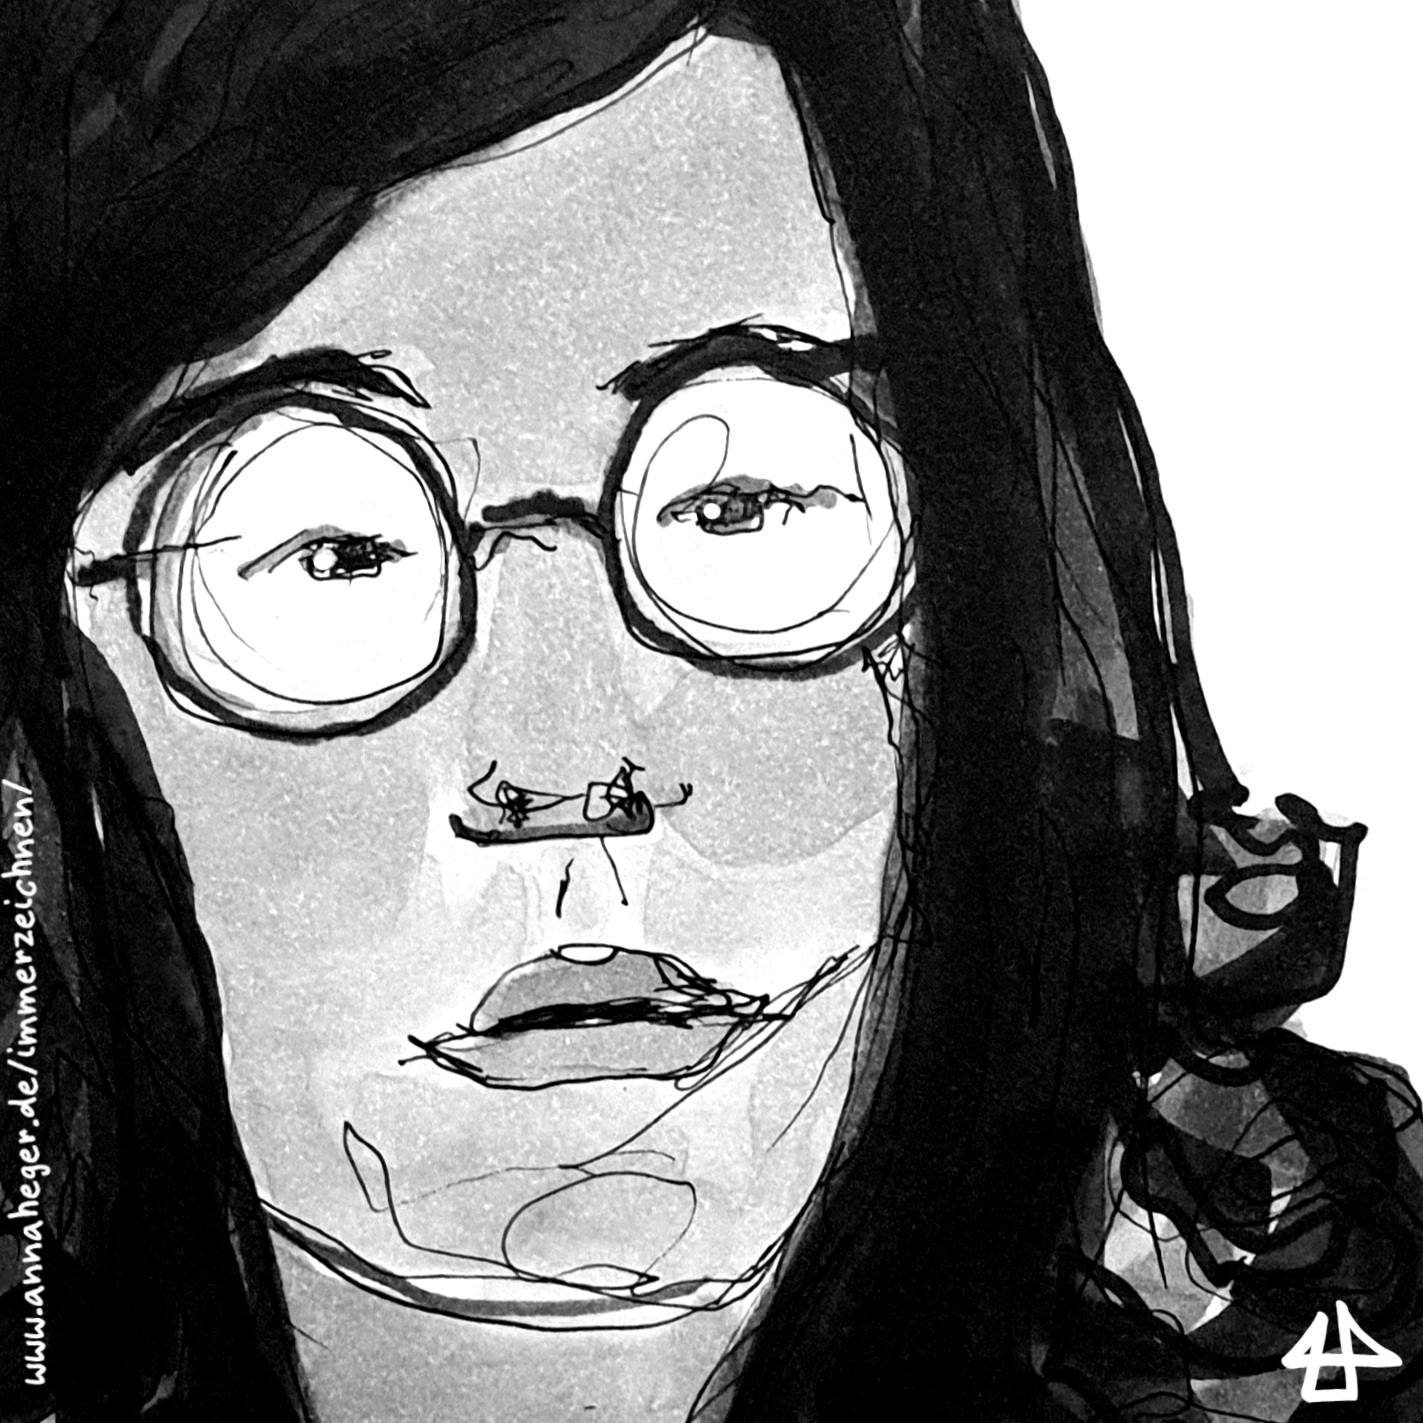 Porträt mit Tinte, koloriert mit Filzstiften in Grautöne: weiße Person um die 40 mit halblangen lockigen dunklen Haaren und Brille mit runden Brillengläsern schaut ernst nach rechts.